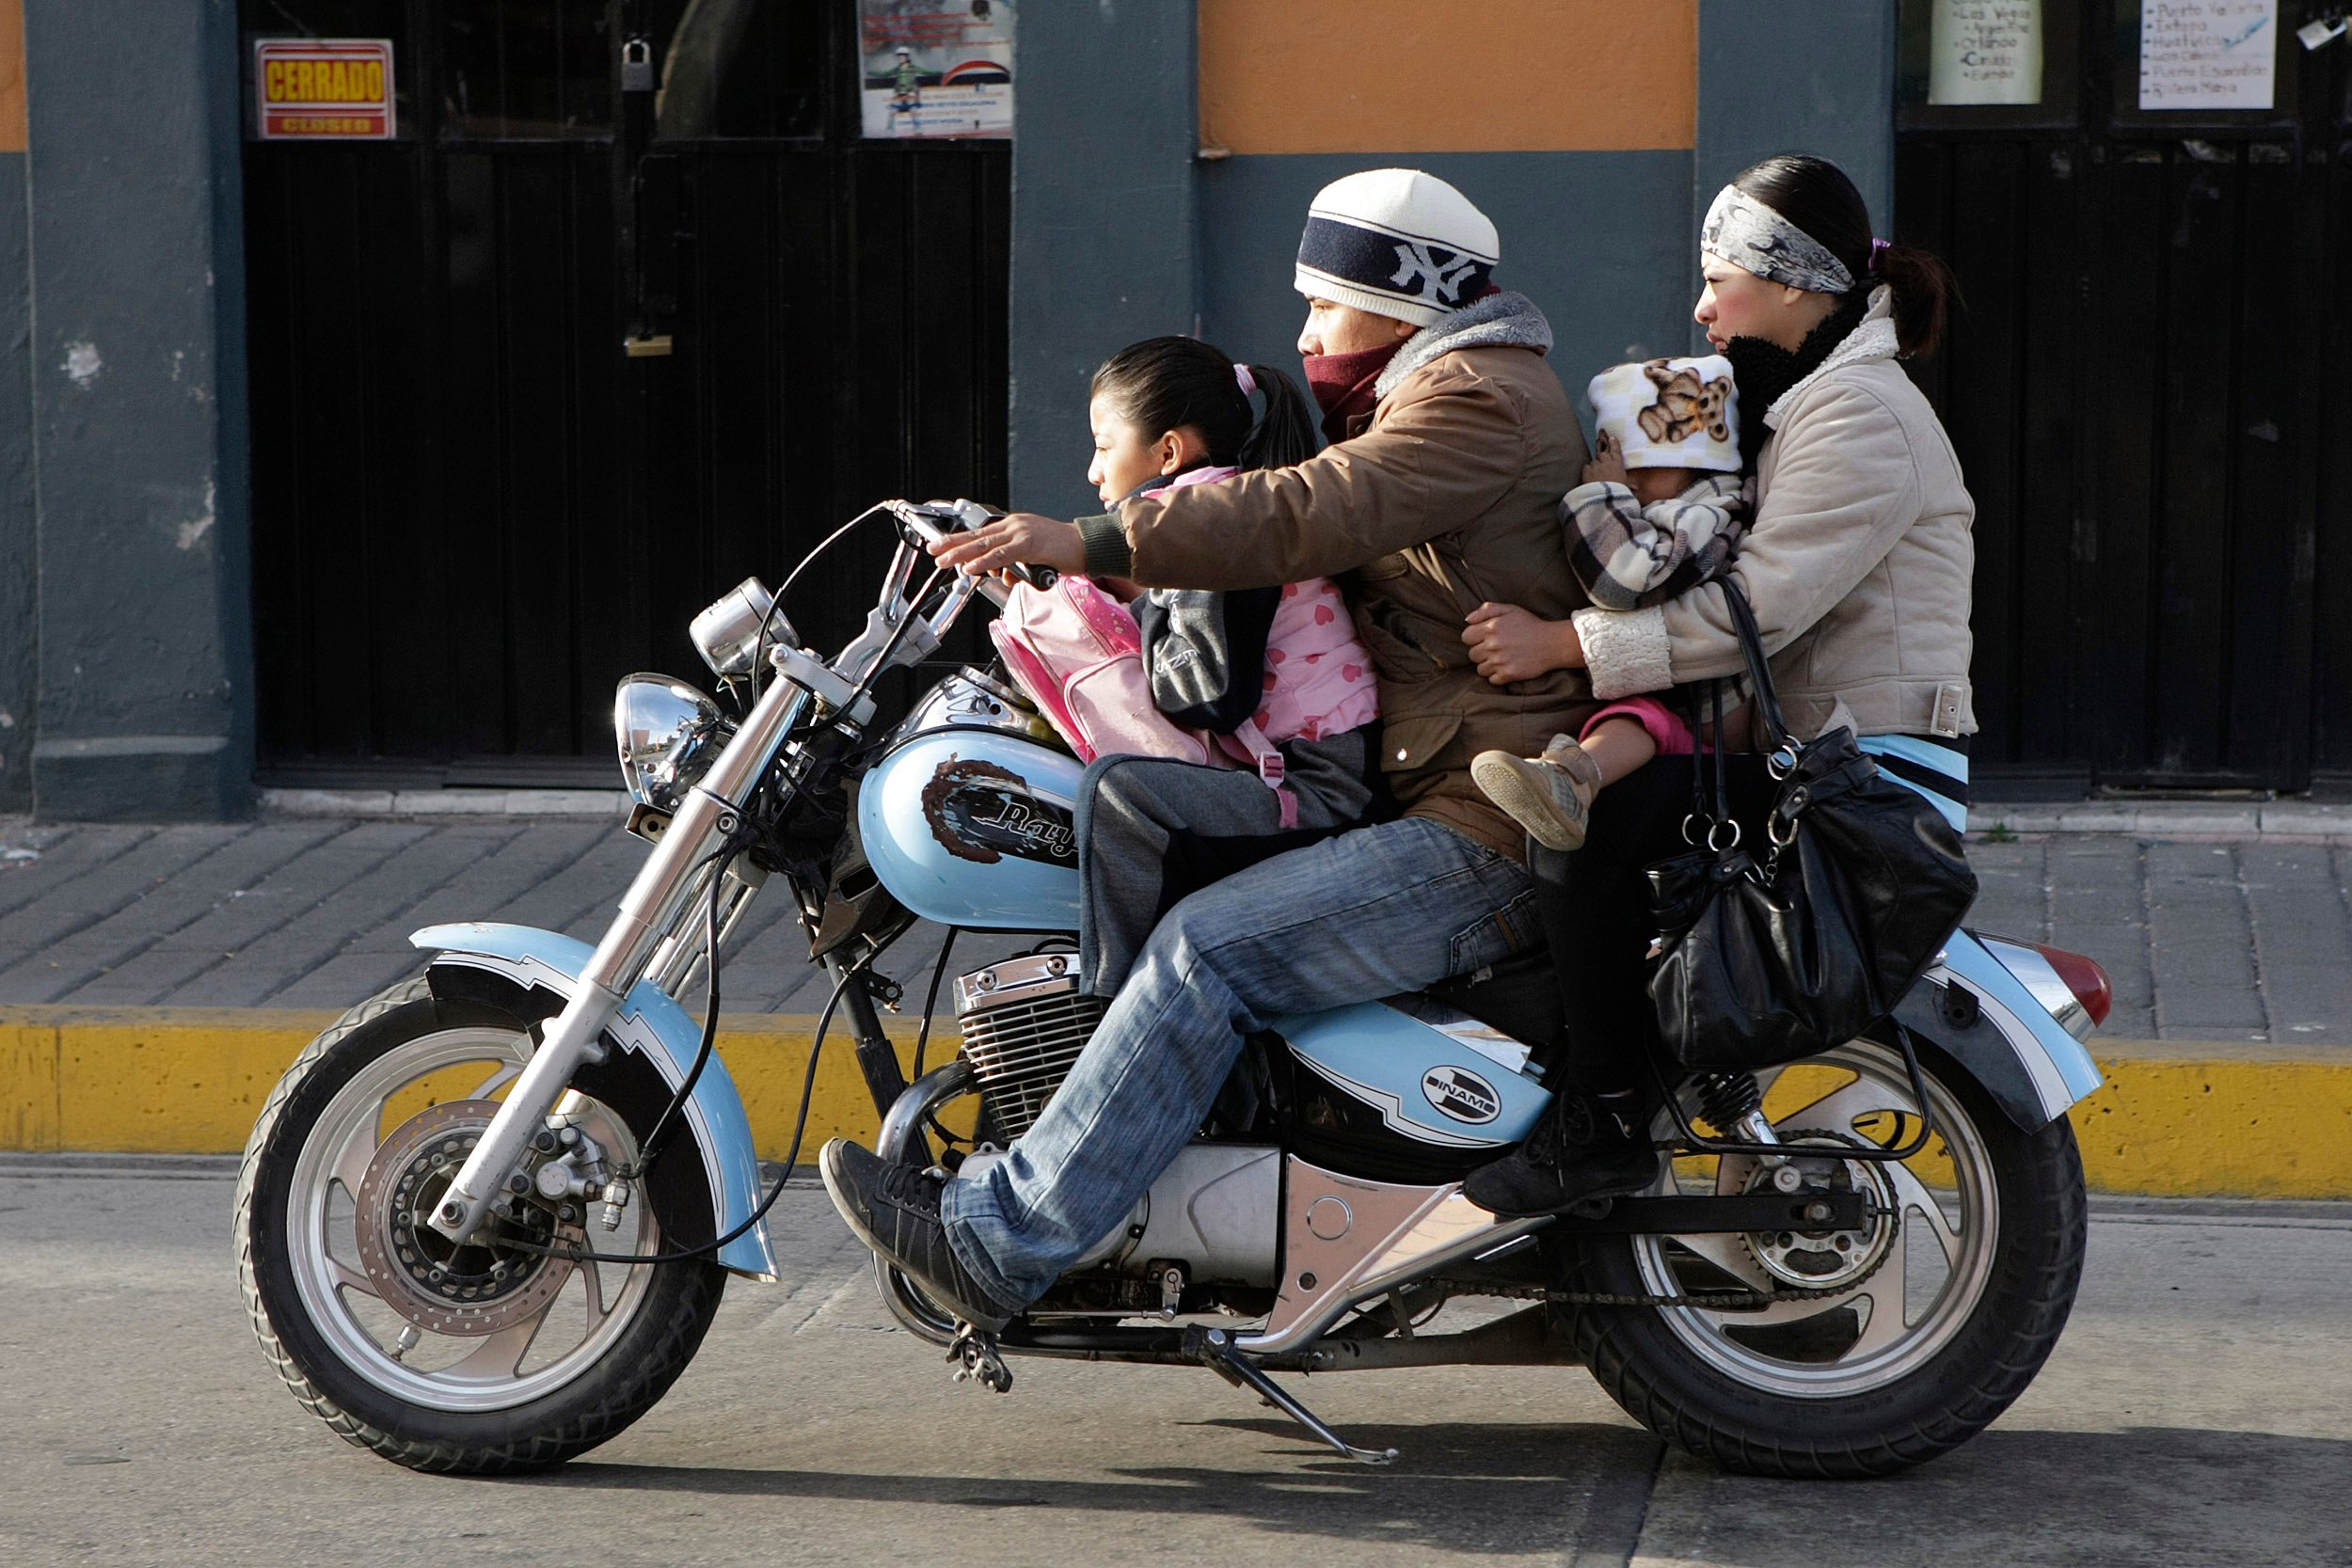 Prohibirán circulación de dos personas en moto para evitar actos delictivos